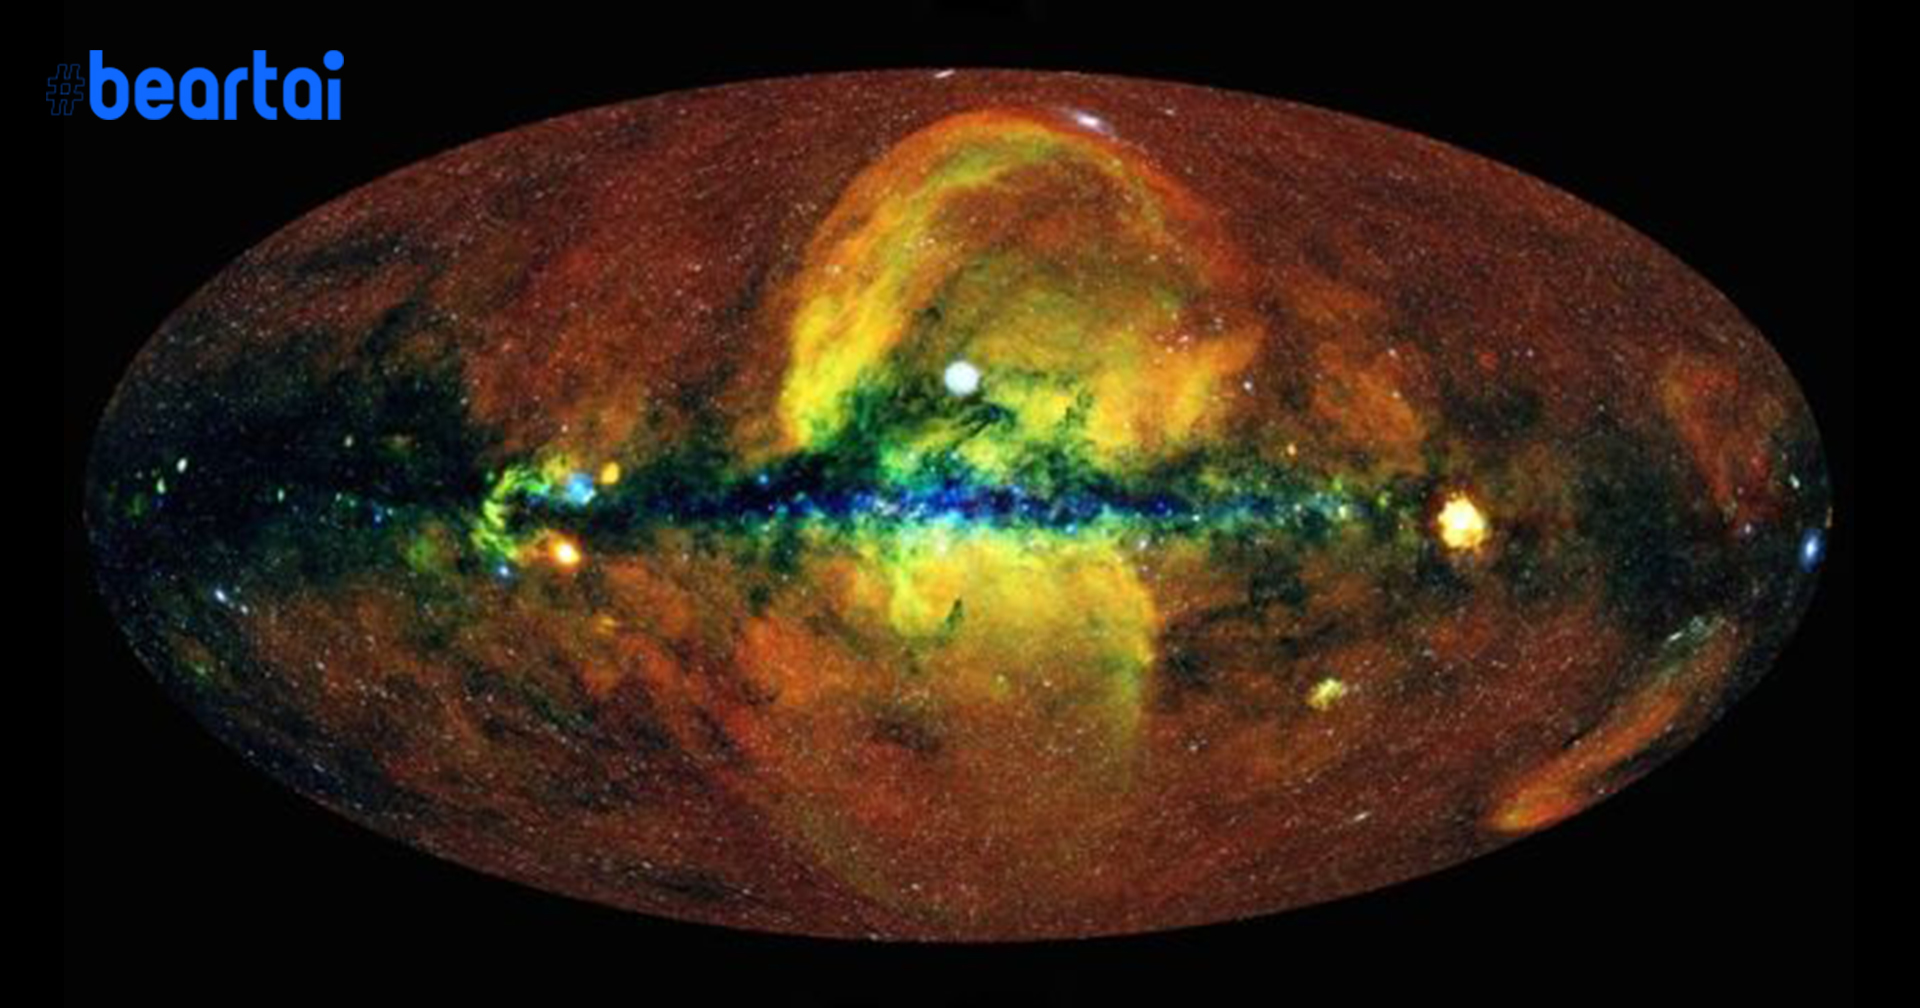 สุดตระการตา! ภาพแผนที่เอกภพหลากสีฉบับล่าสุดอาจช่วยไขปริศนาเอกภพด้วยรังสีเอกซเรย์